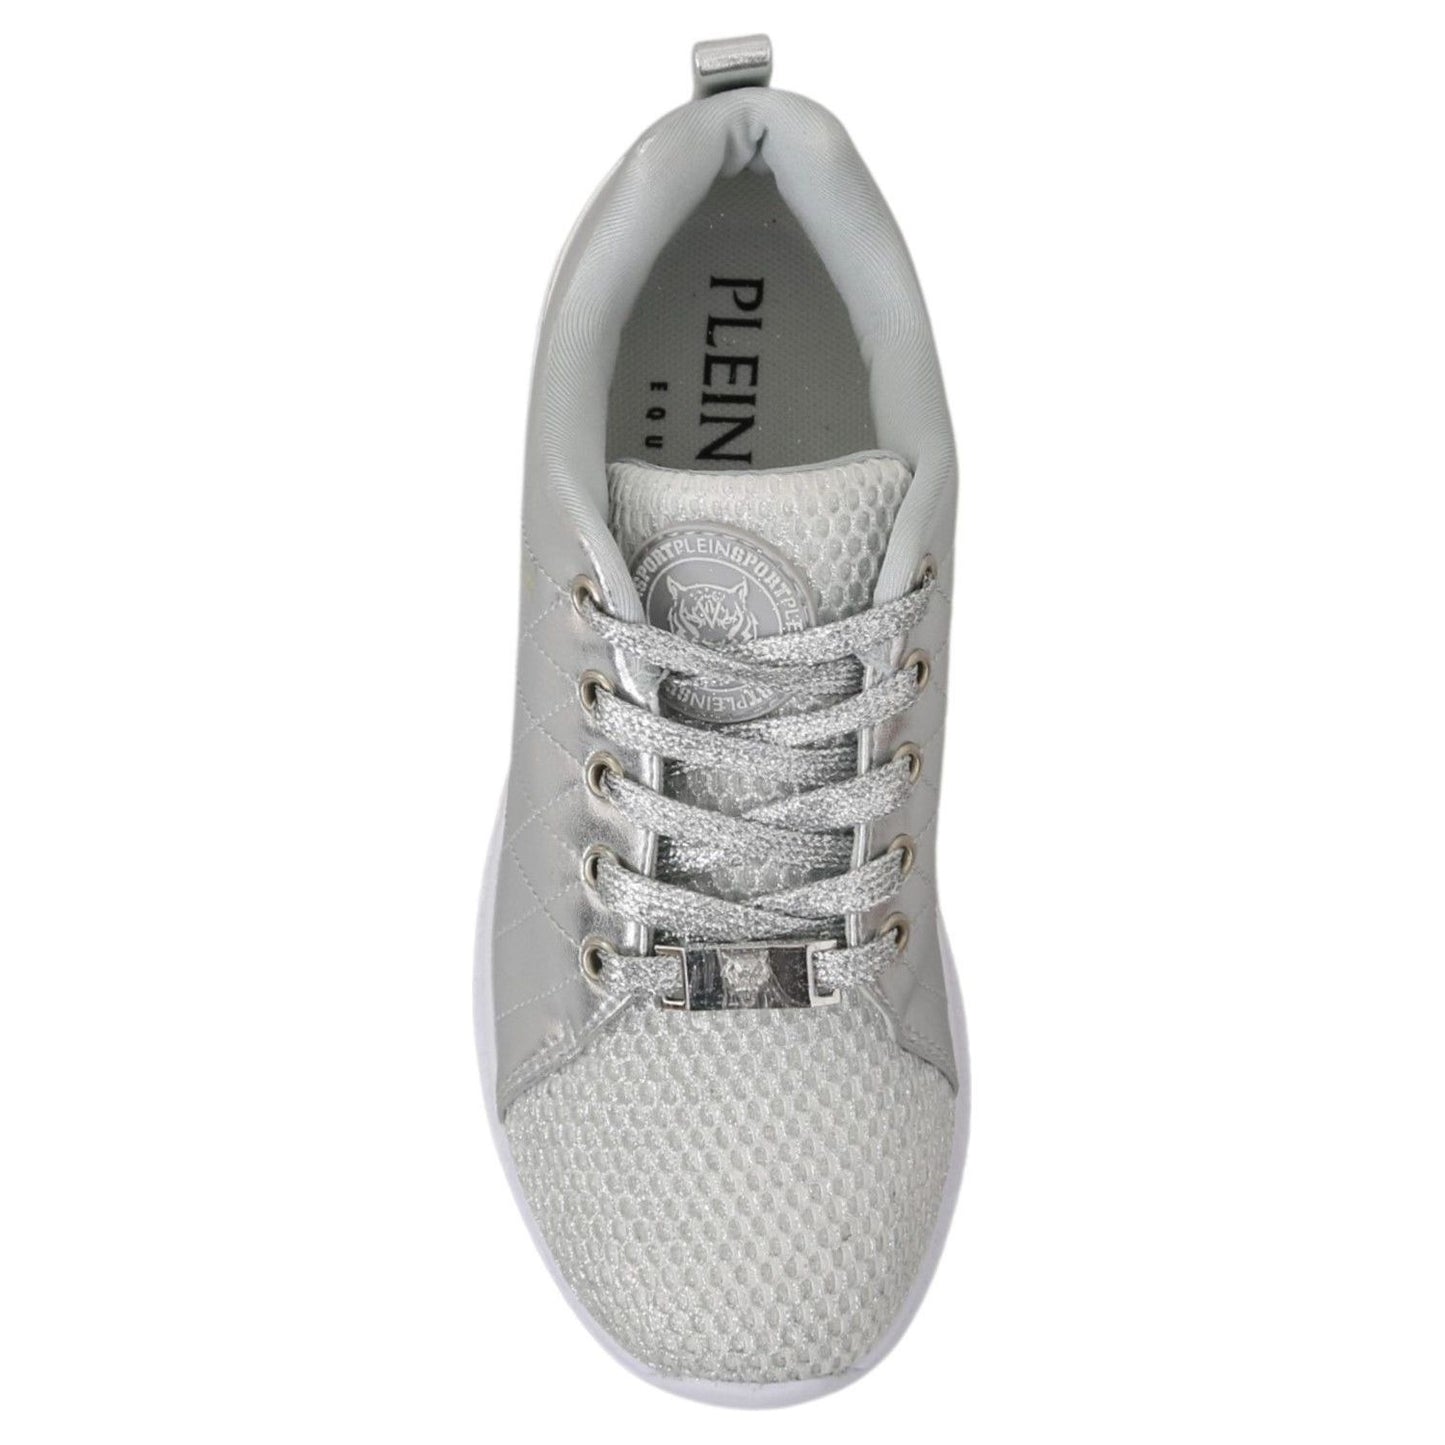 Philipp PleinSleek Silver Sneakers for TrendsettersMcRichard Designer Brands£239.00